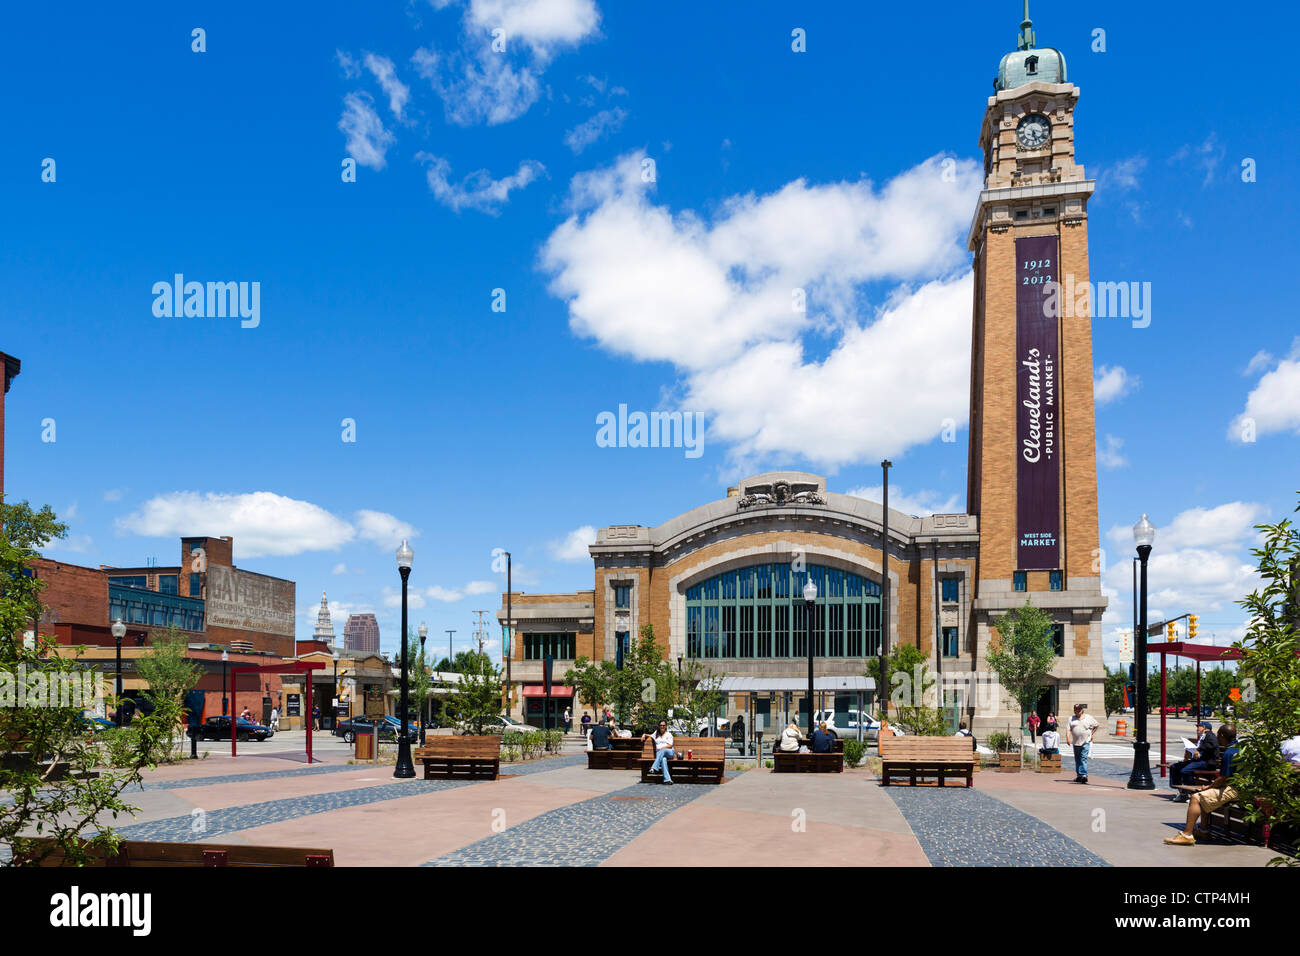 West Side Market, Market Square, Ohio City district, Cleveland, Ohio, USA Stock Photo